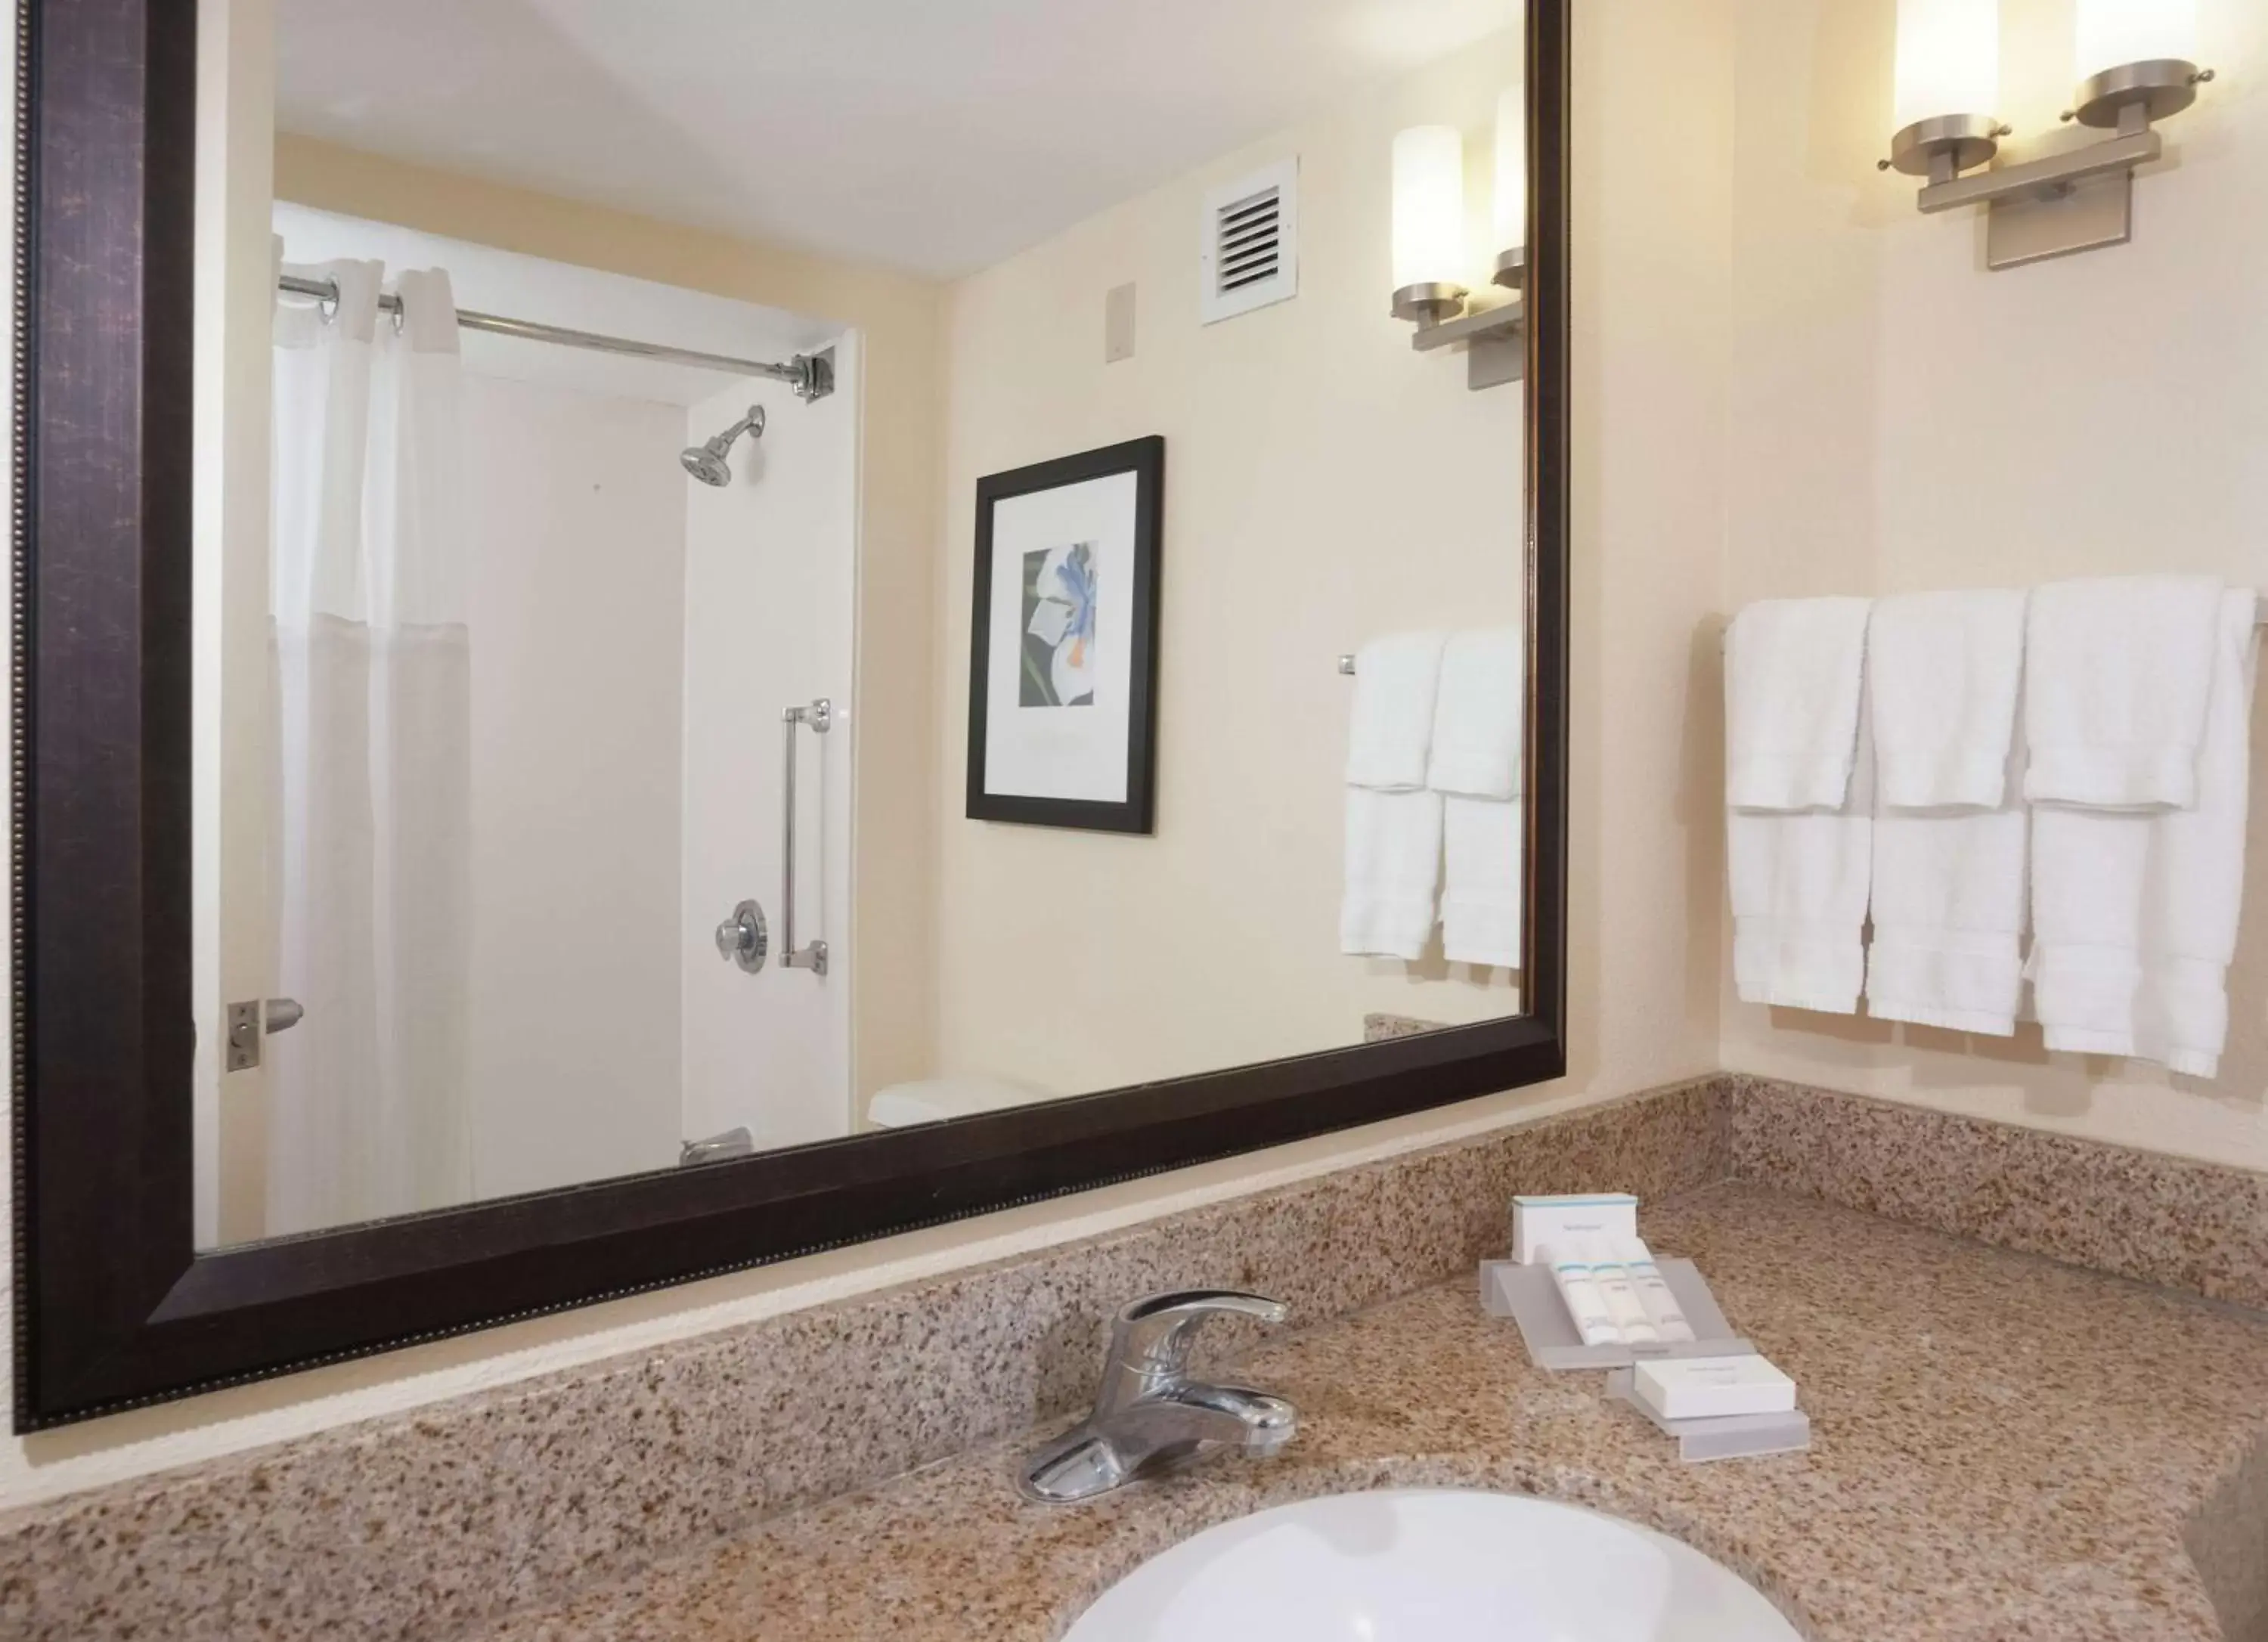 Bathroom in Hilton Garden Inn Orlando Airport